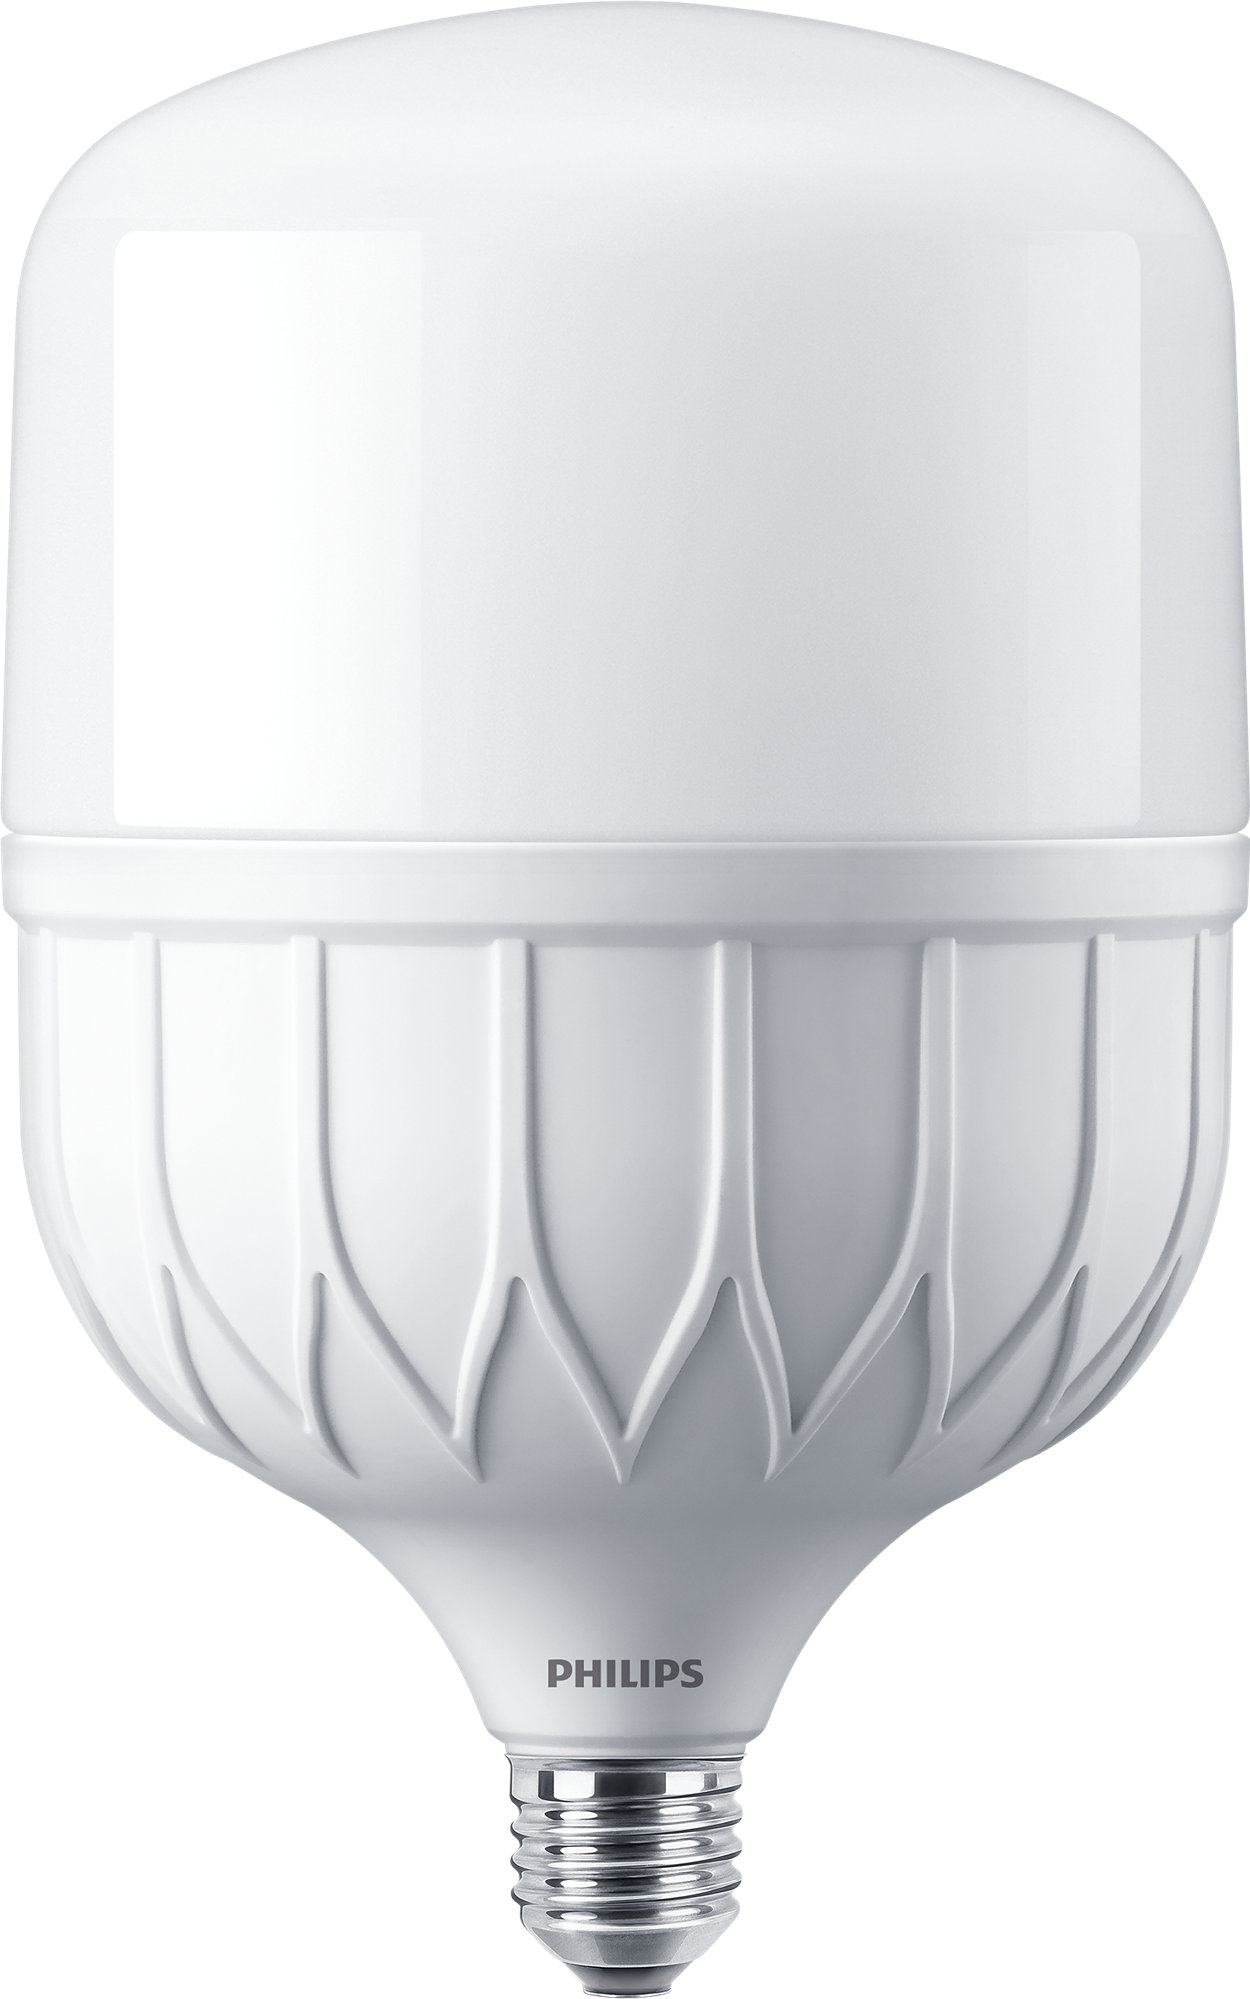 Ideal para reemplazo LED HPI/SON/HPL en aplicaciones a gran altura